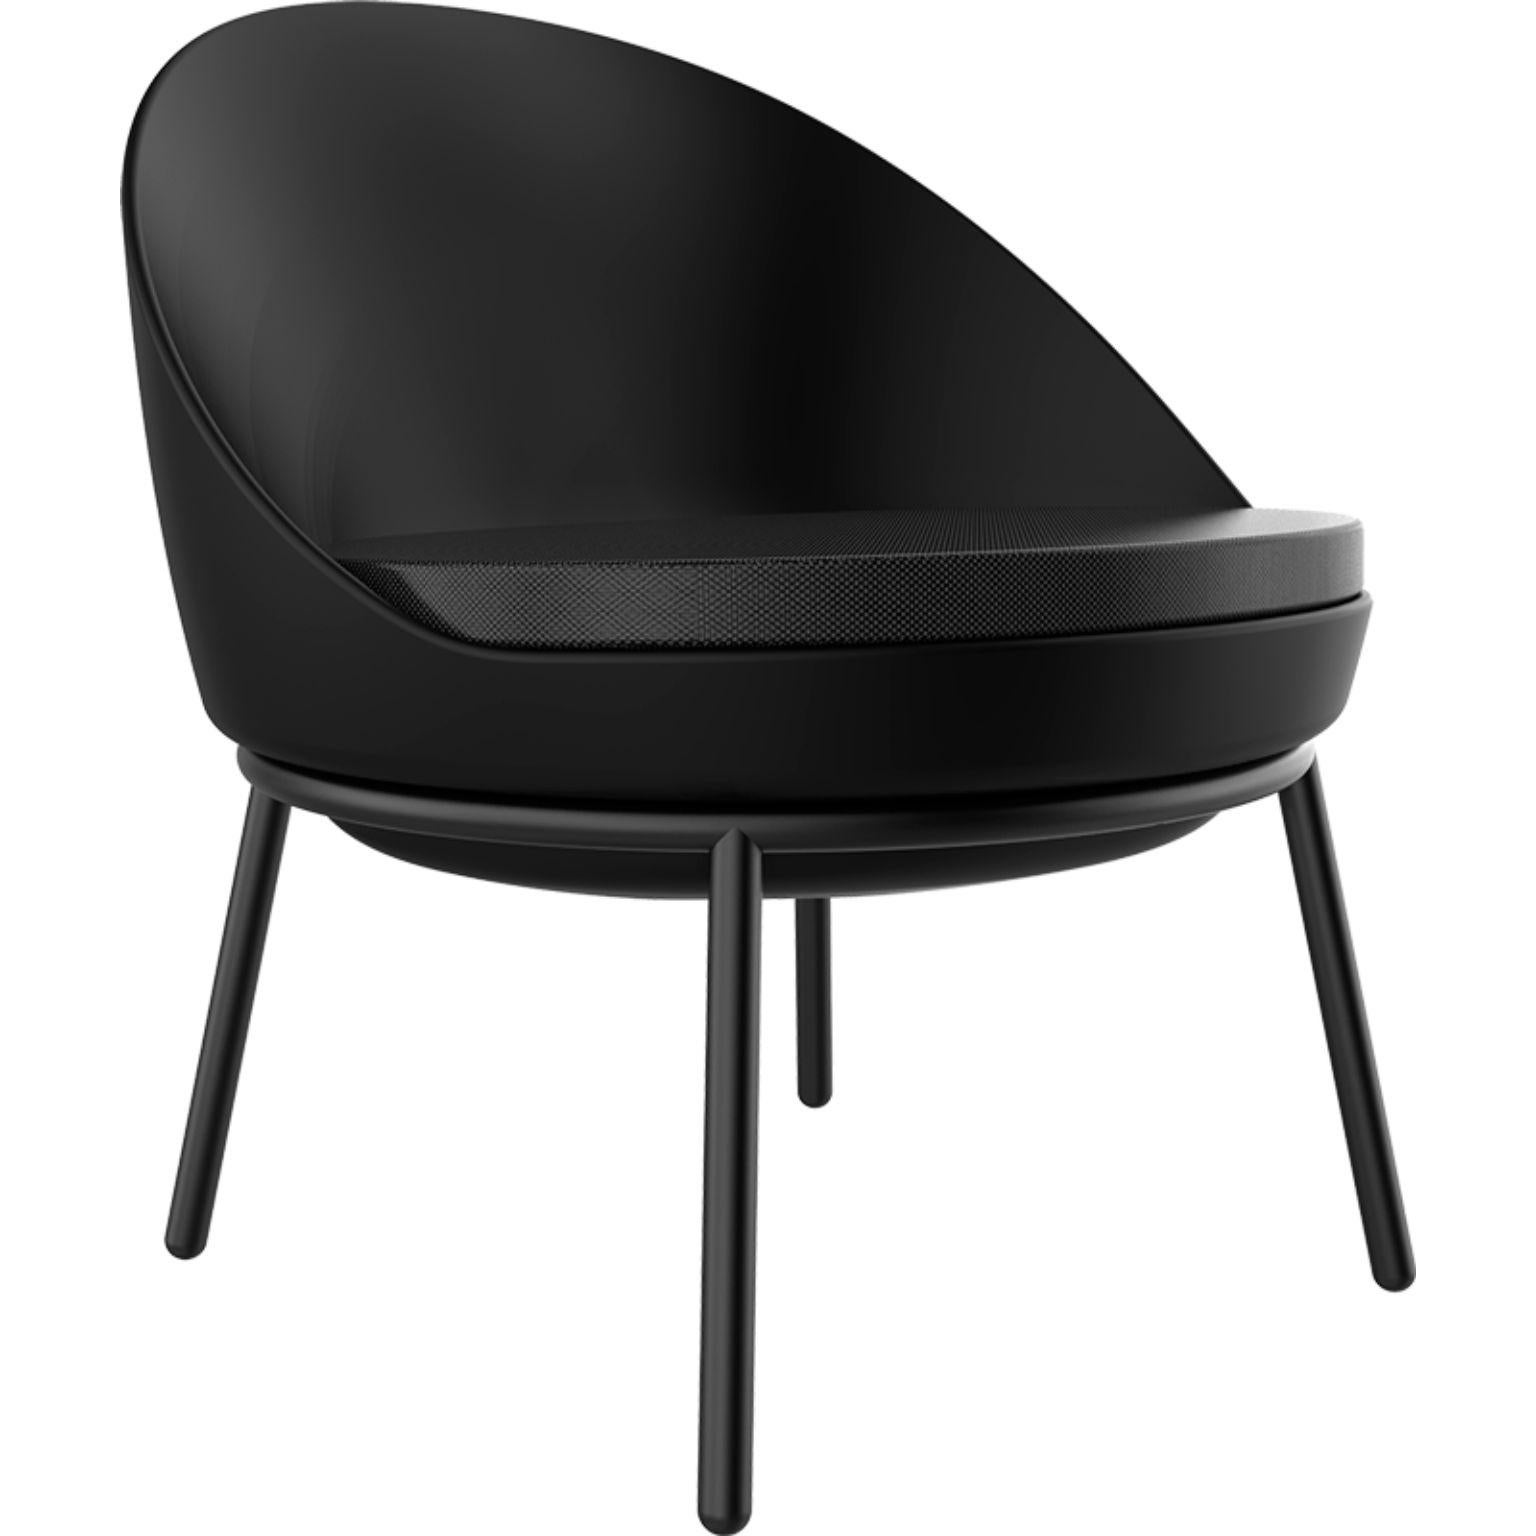 Schwarzer Loungesessel mit Kissen von MOWEE
Abmessungen: T70 x B66 x H75,5 cm
MATERIAL: Polyethylen, rostfreier Stahl
Gewicht: 10.5 kg
Auch in verschiedenen Farben und Ausführungen erhältlich. 

Lace ist eine Kollektion von Möbeln, die im